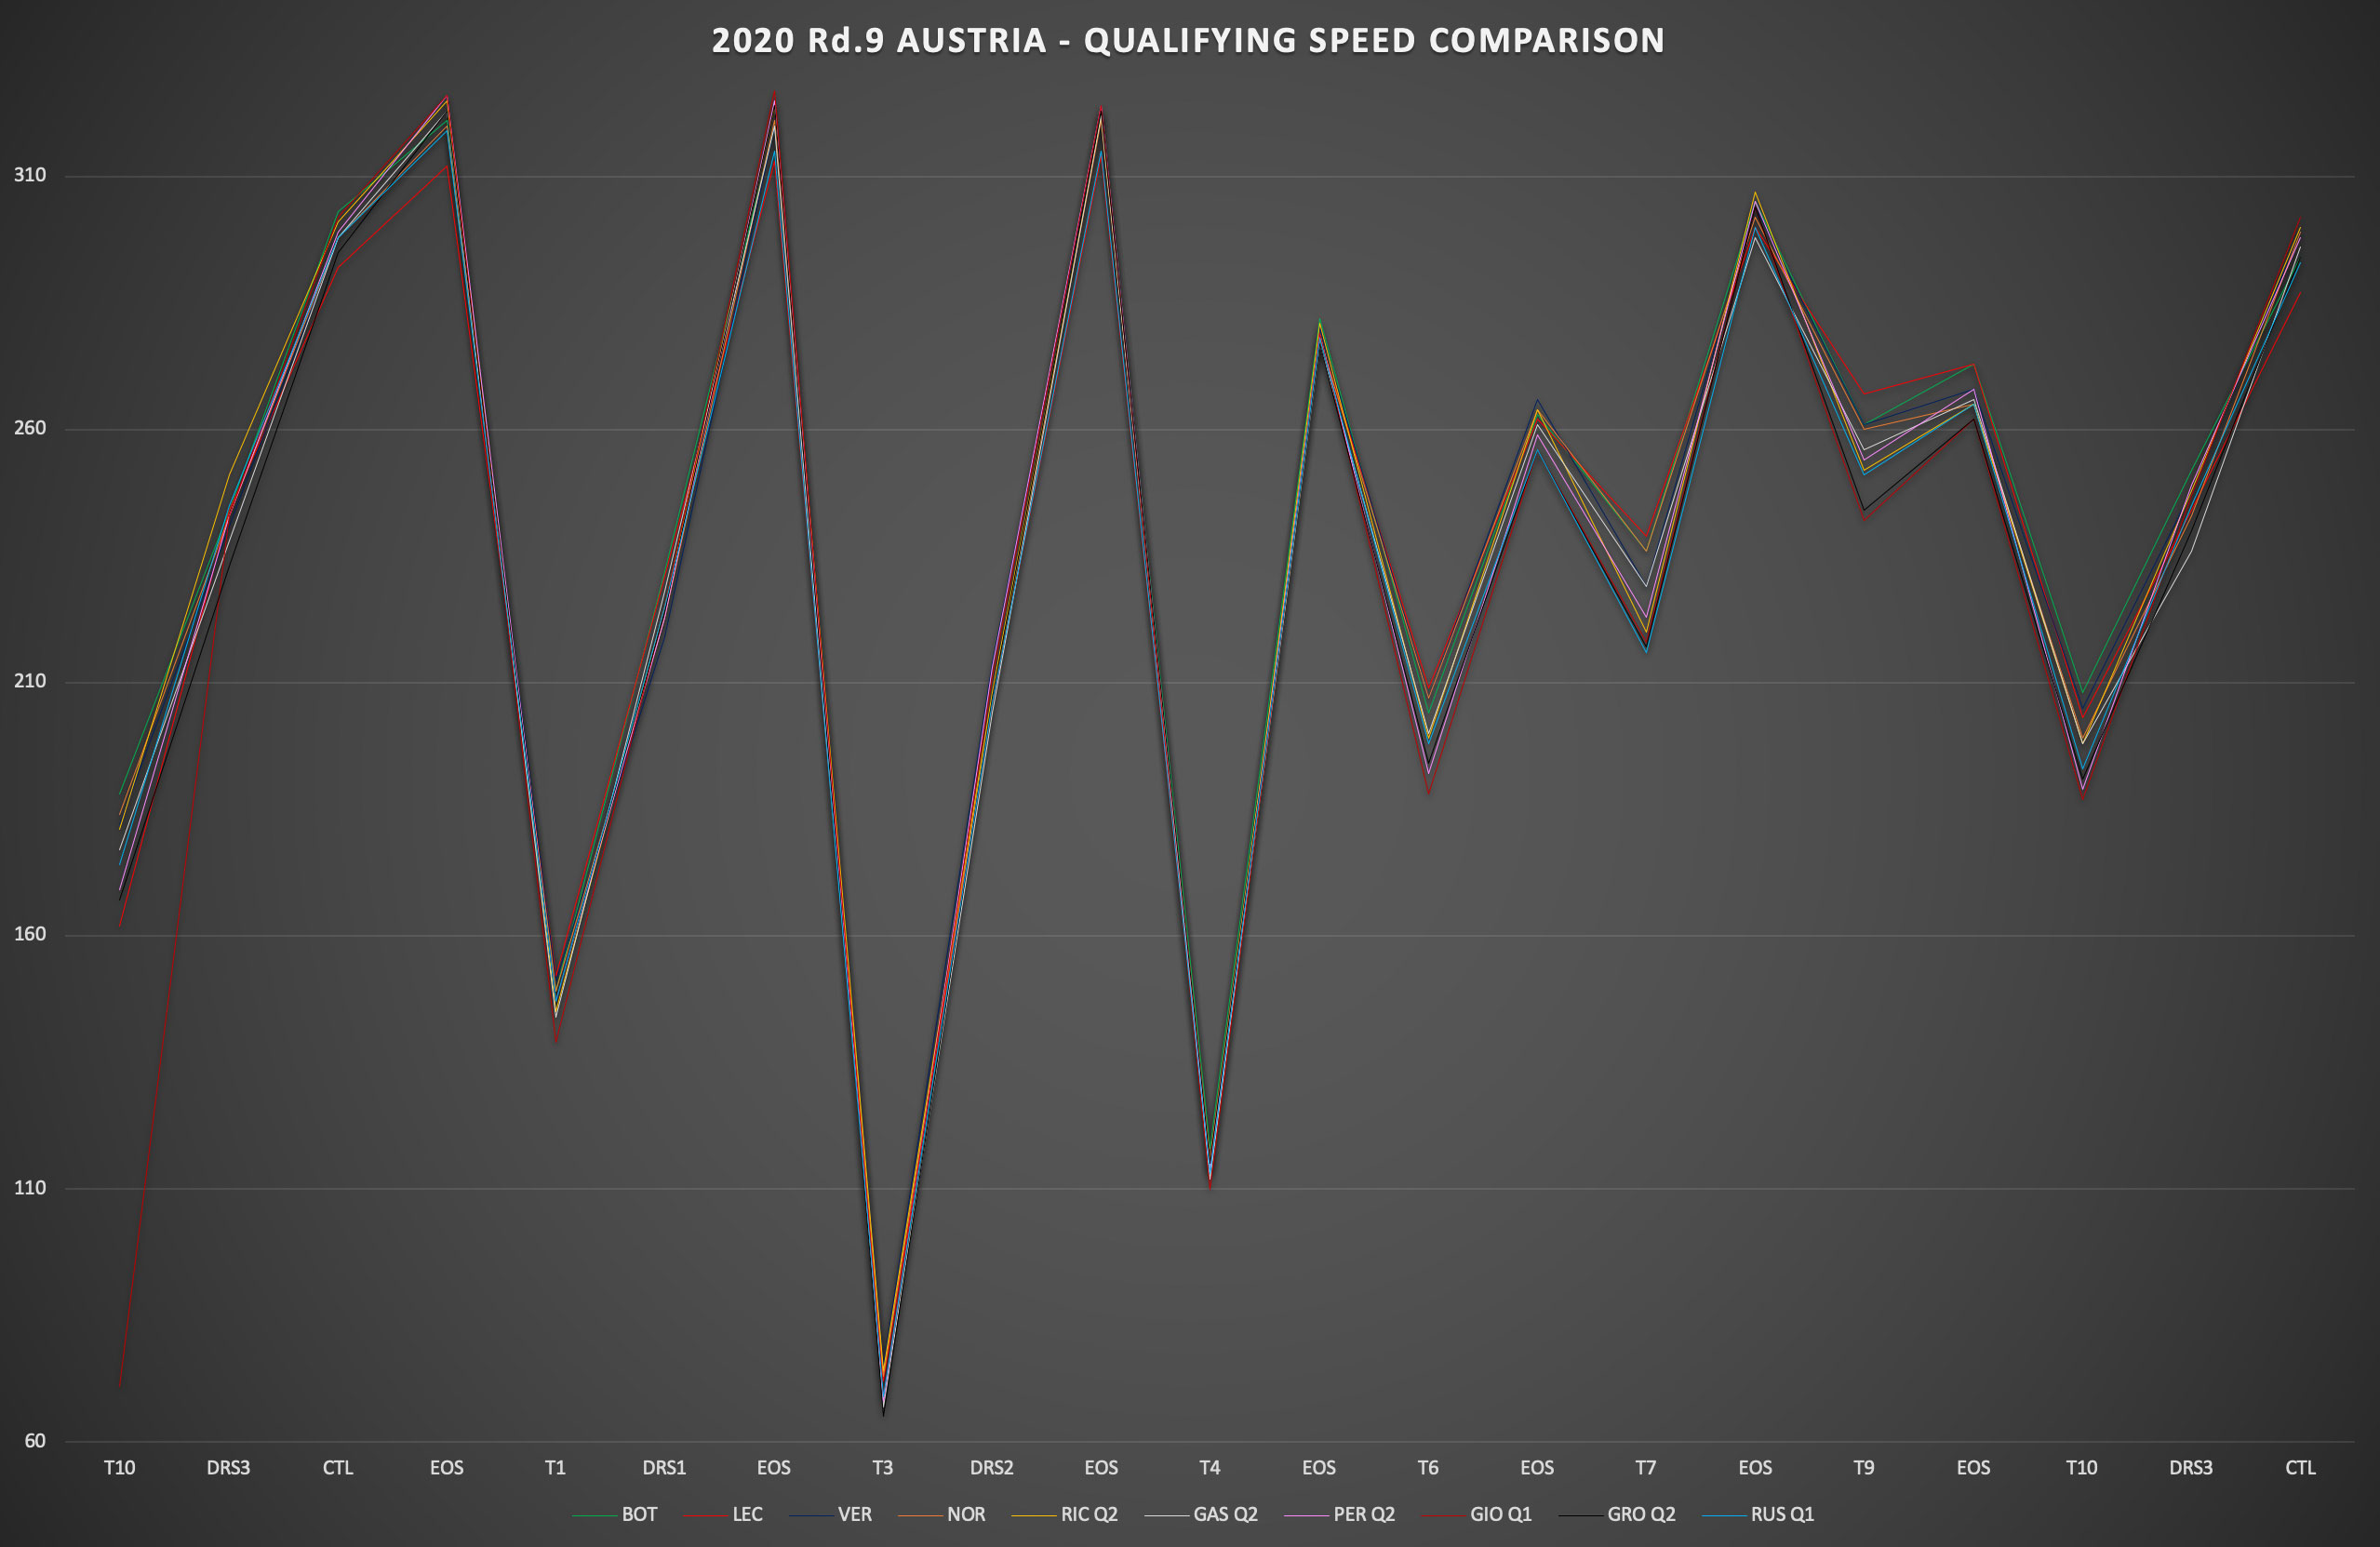 【2020 Rd.1 AUT】徹底分析③：予選スピード比較で分かったメルセデスAMGの強さ、レッドブルの弱さ、フェラーリの可能性